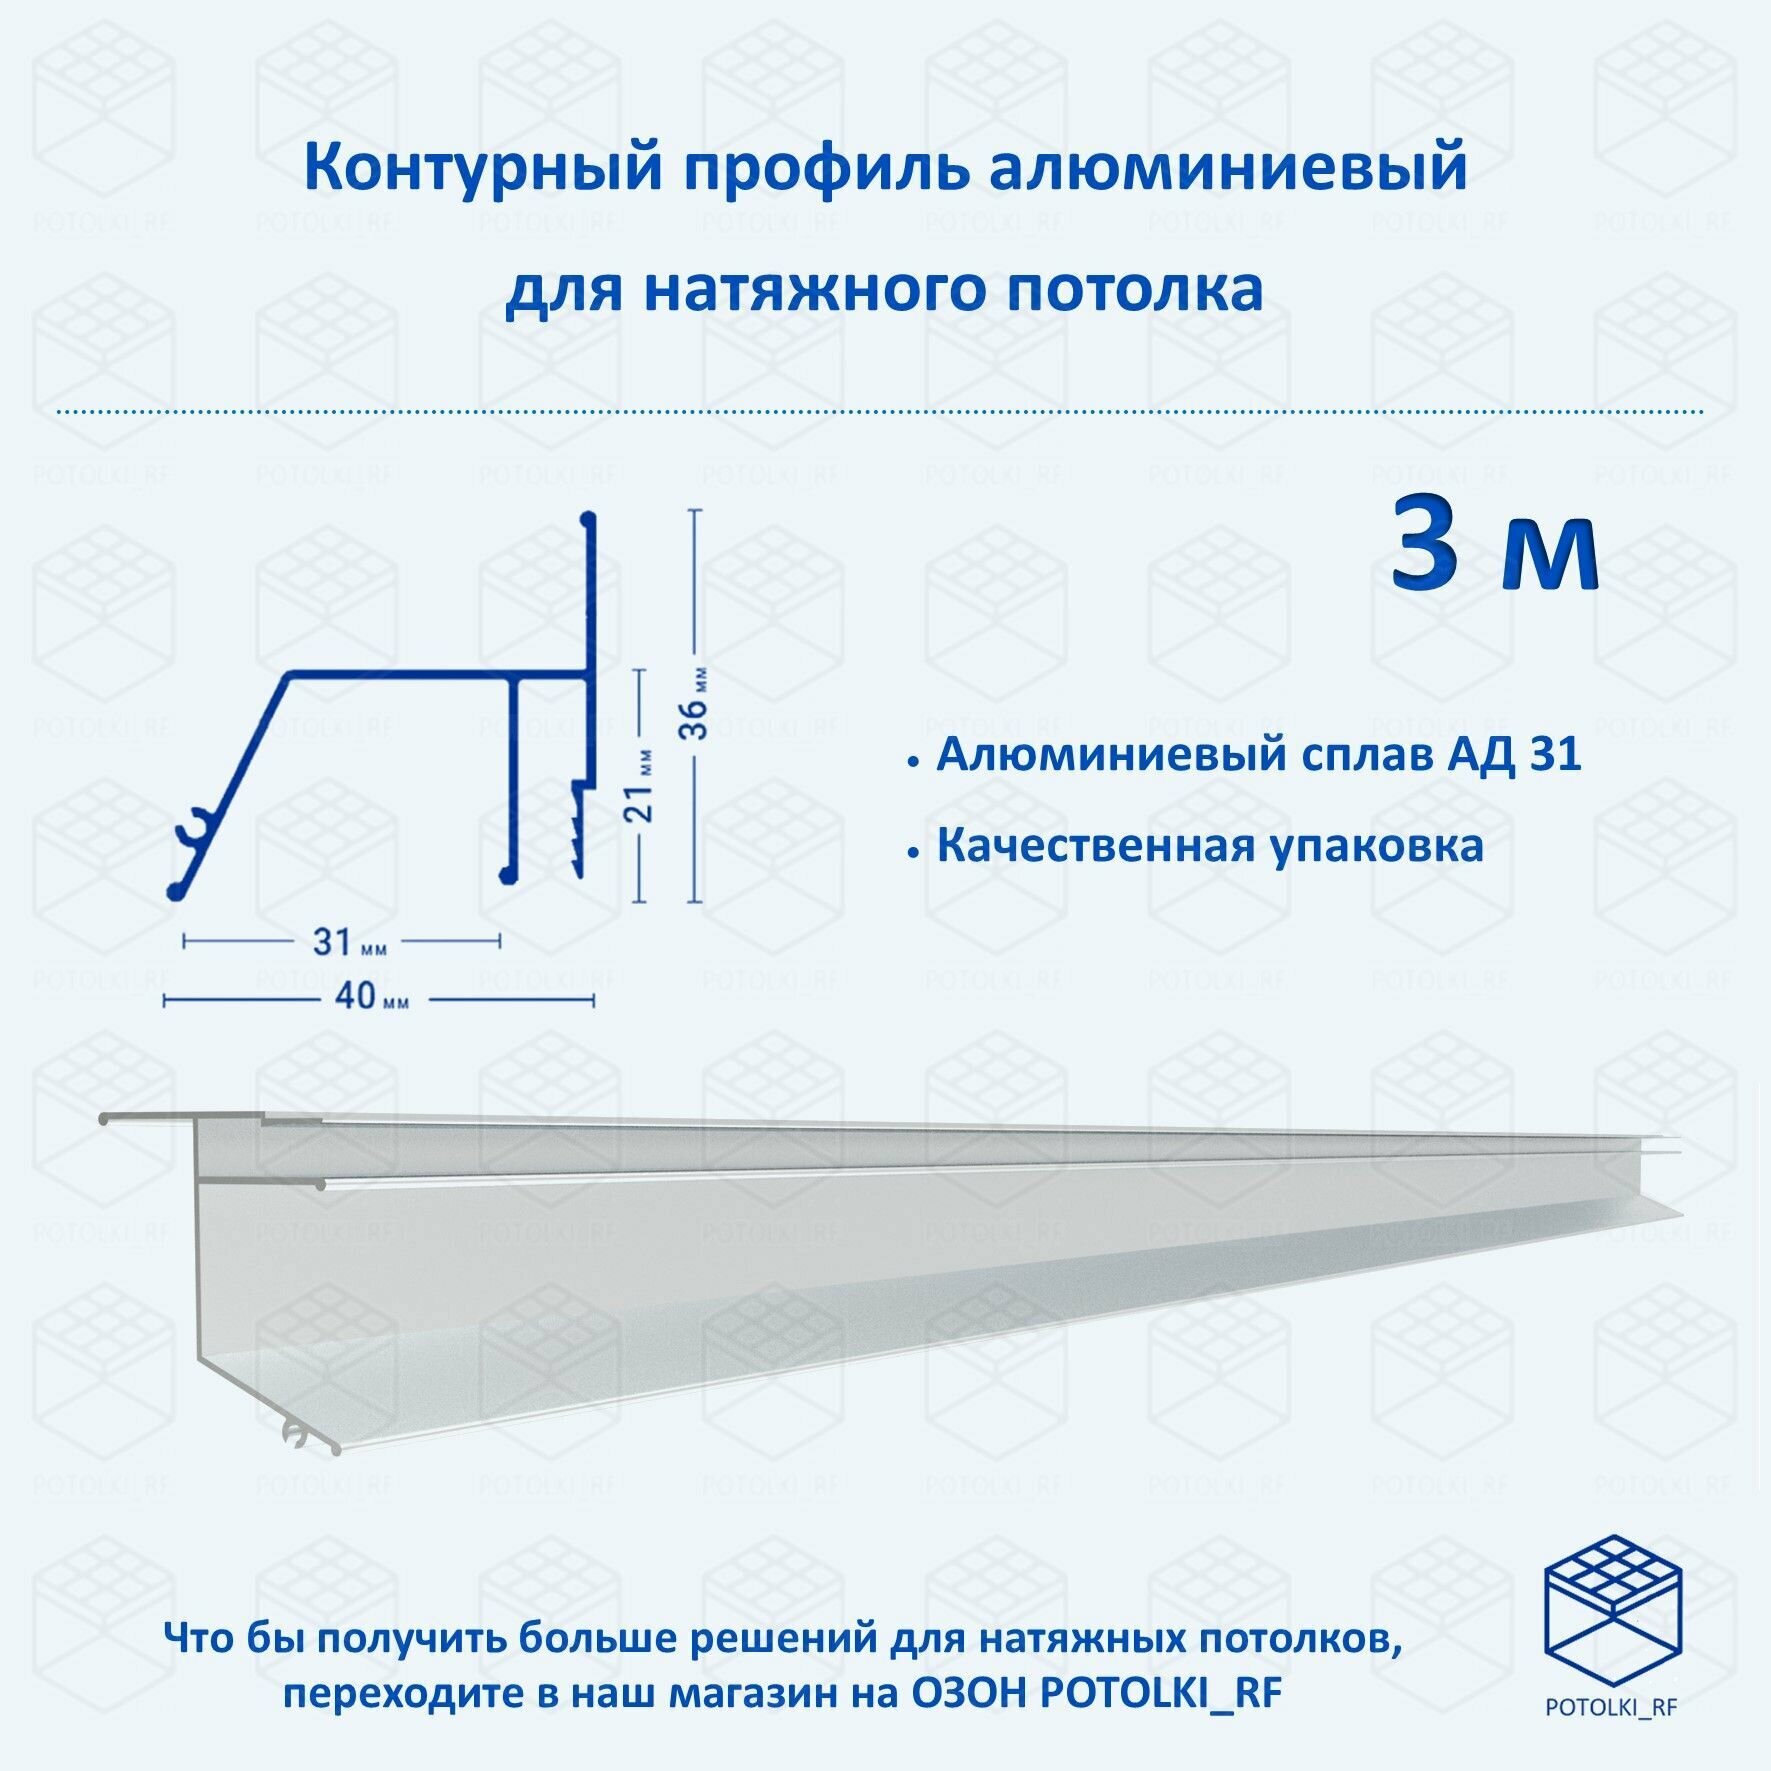 Контурный профиль алюминиевый для натяжного потолка - 1м, 3шт